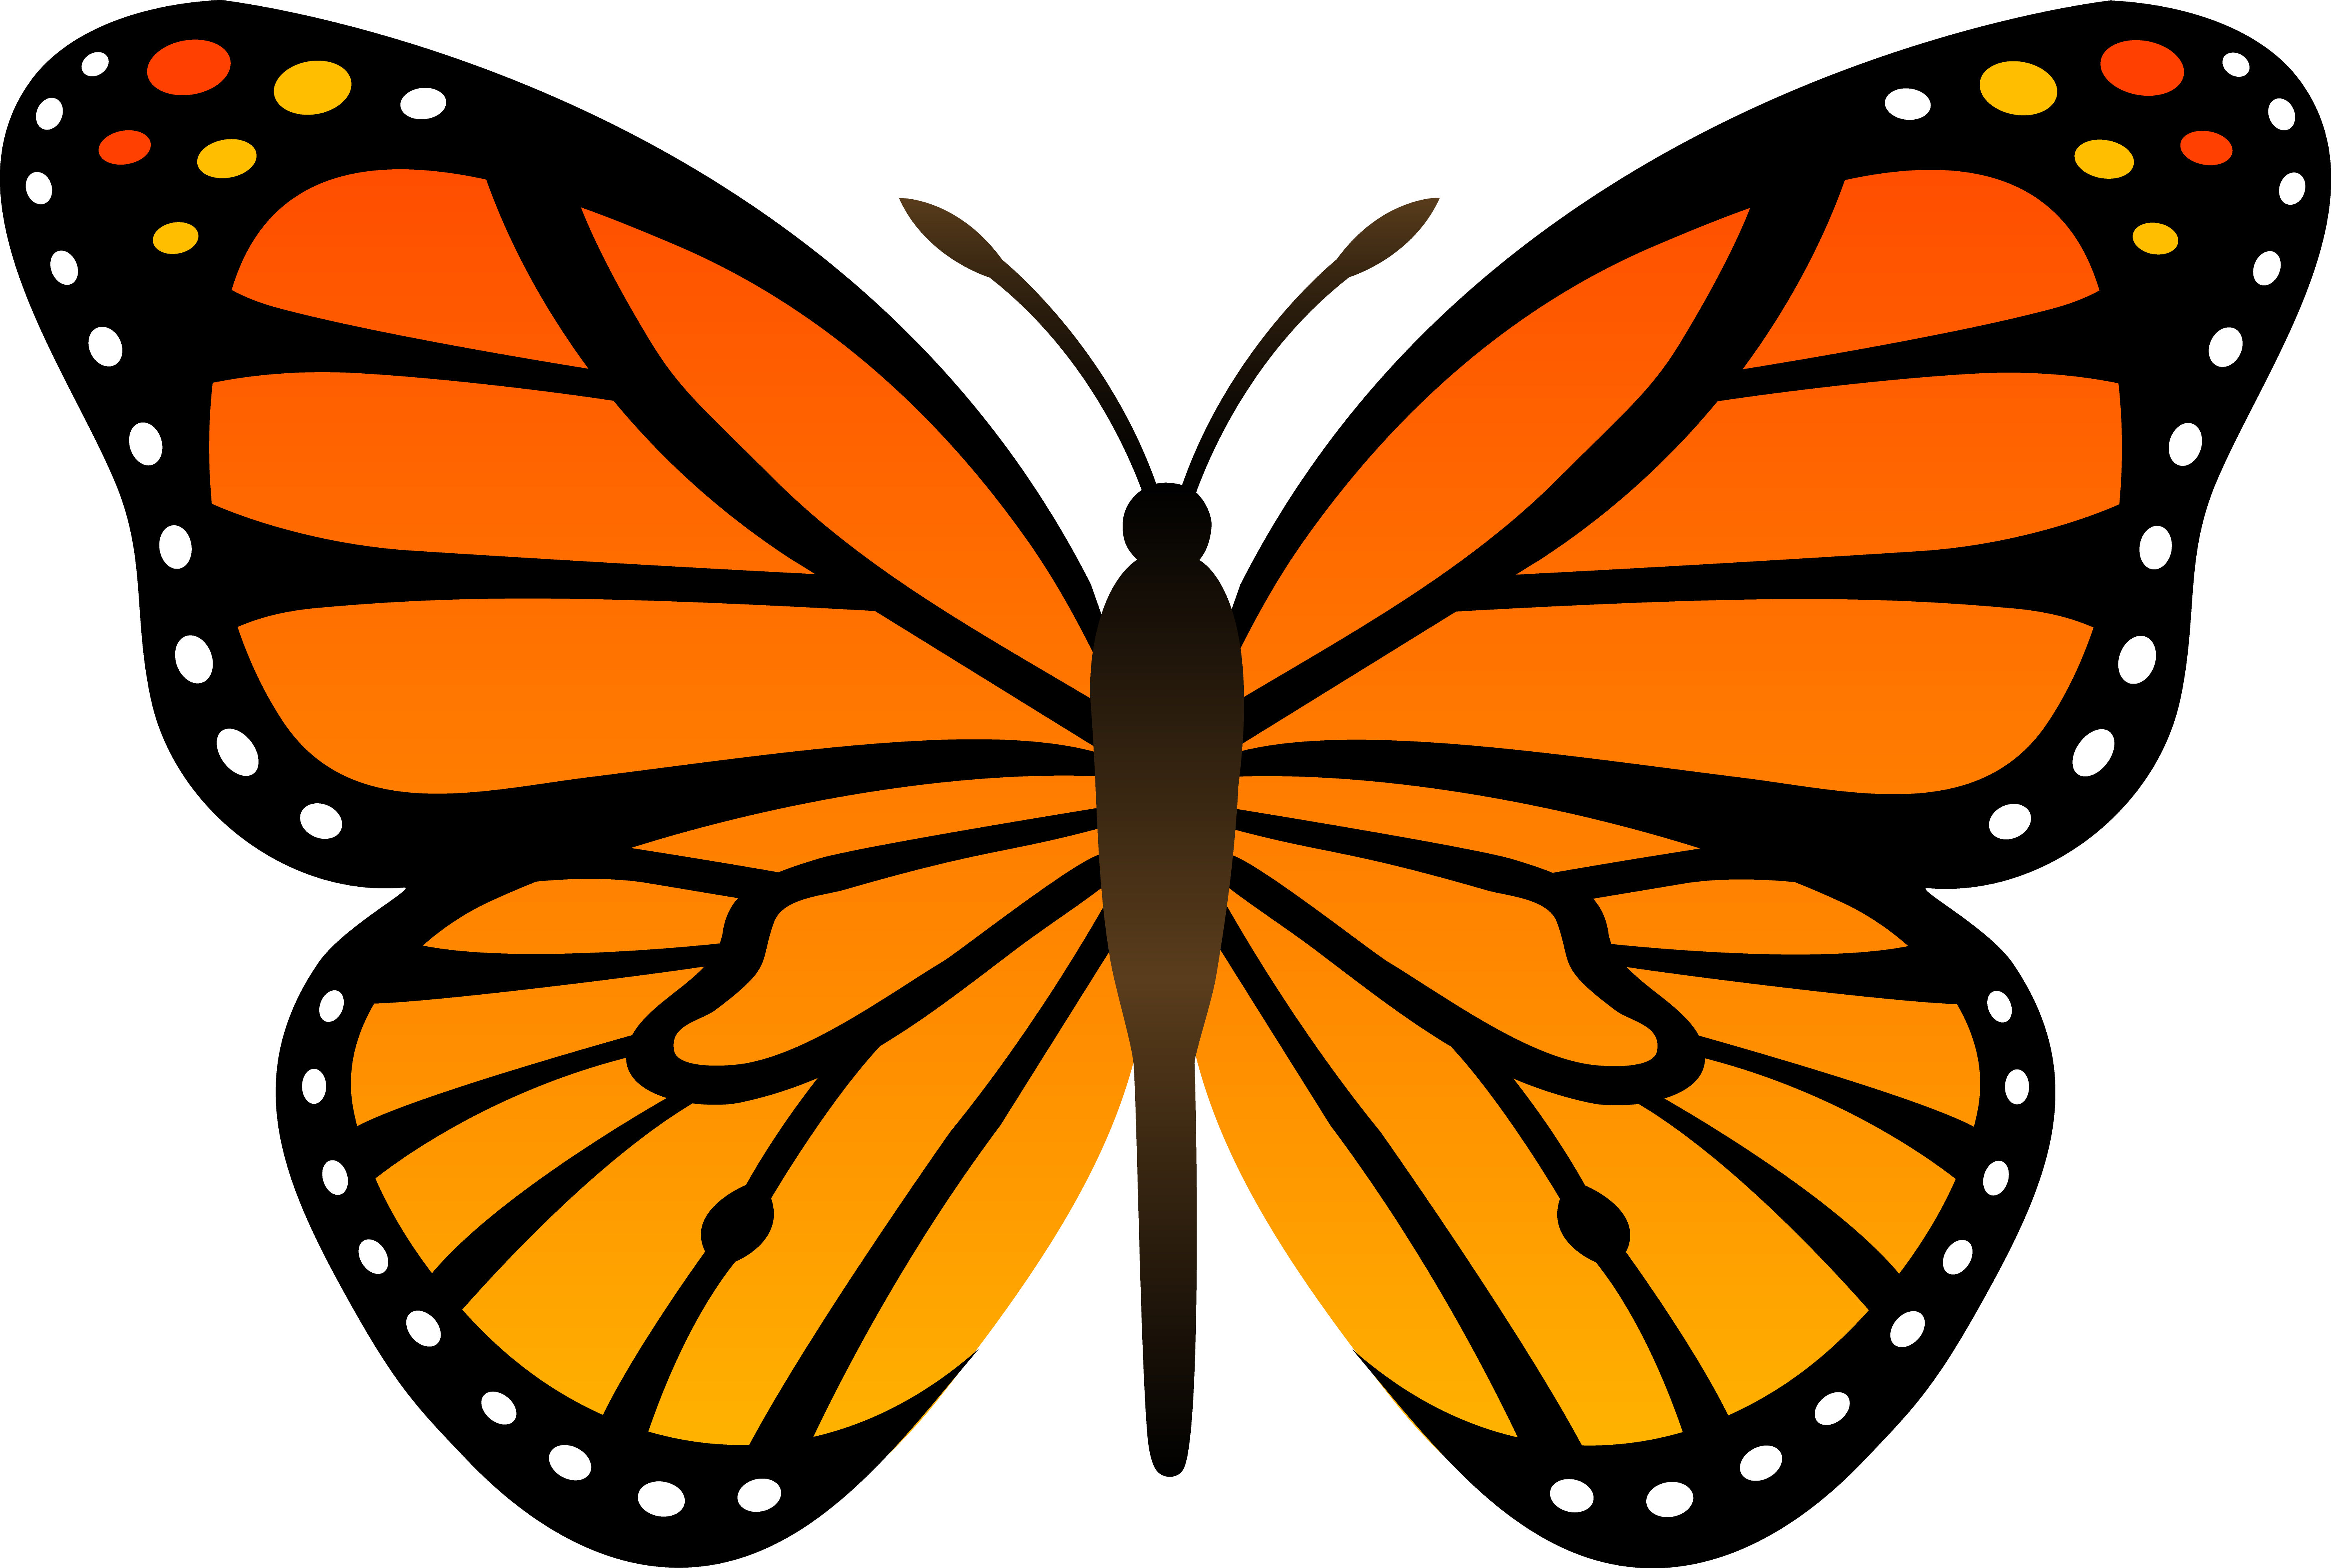 FREE Butterfly Clip Art 14. 1